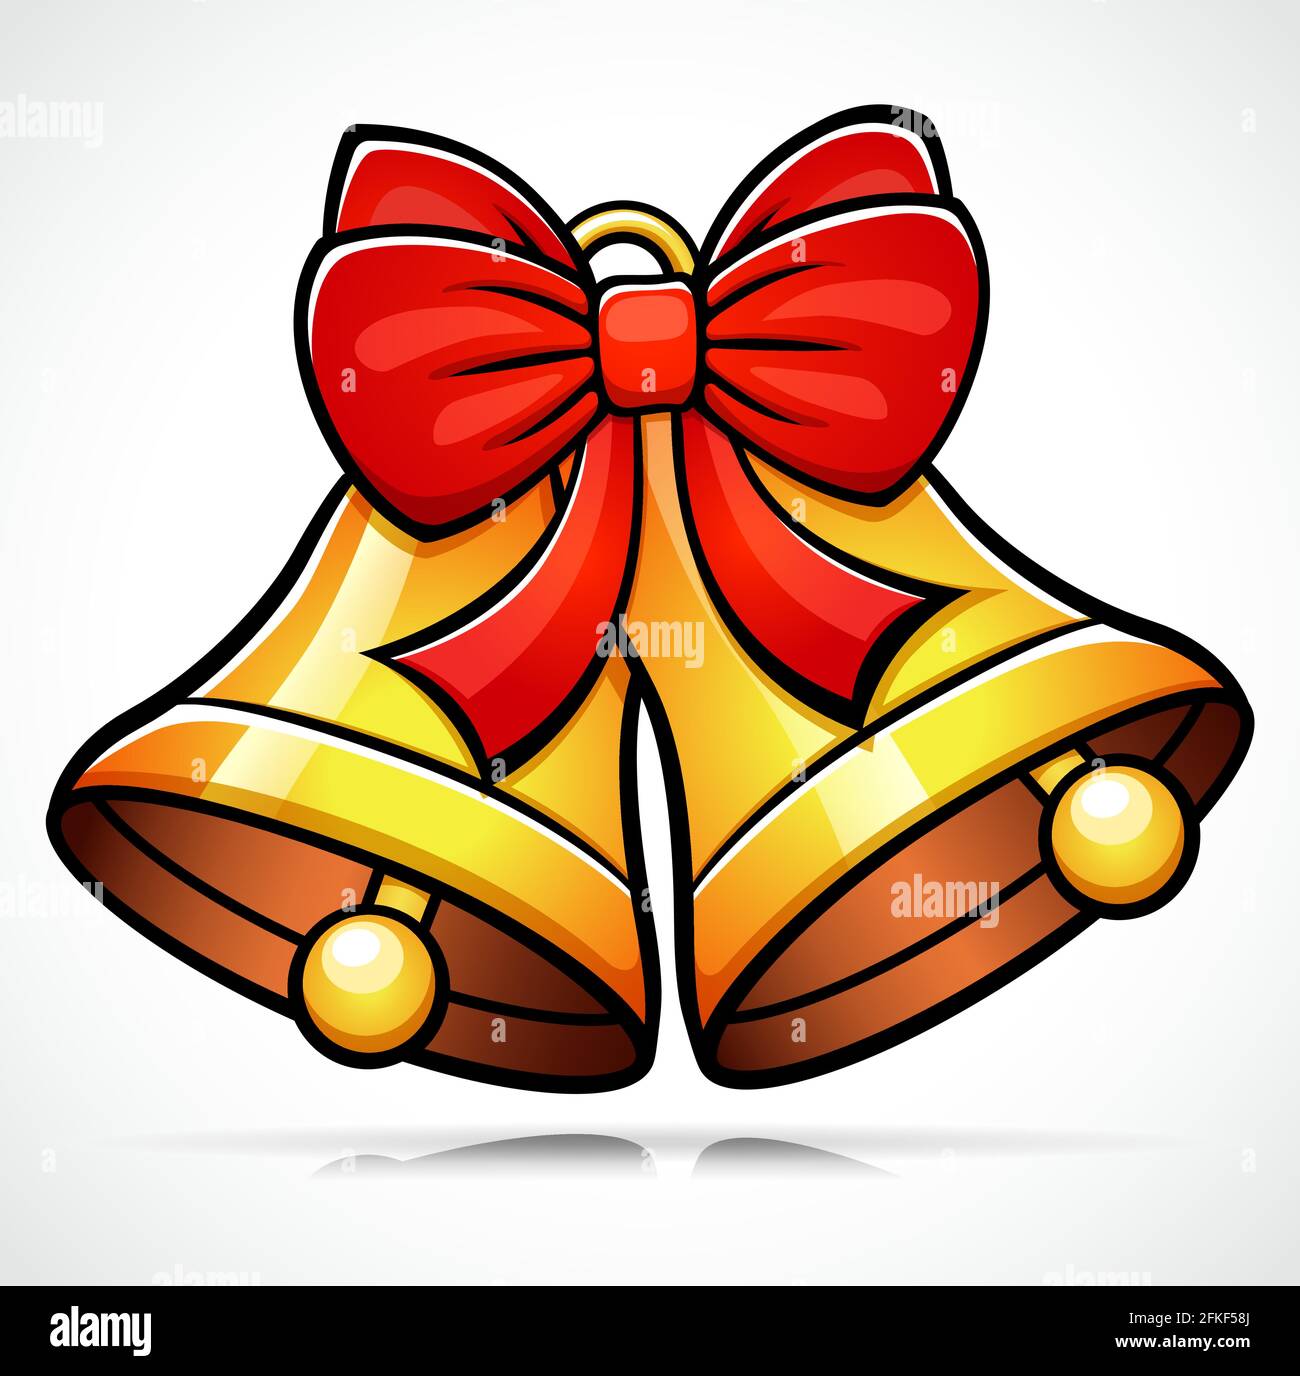 Vektor-Illustration von weihnachten Glocke Cartoon Cliparts  Stock-Vektorgrafik - Alamy